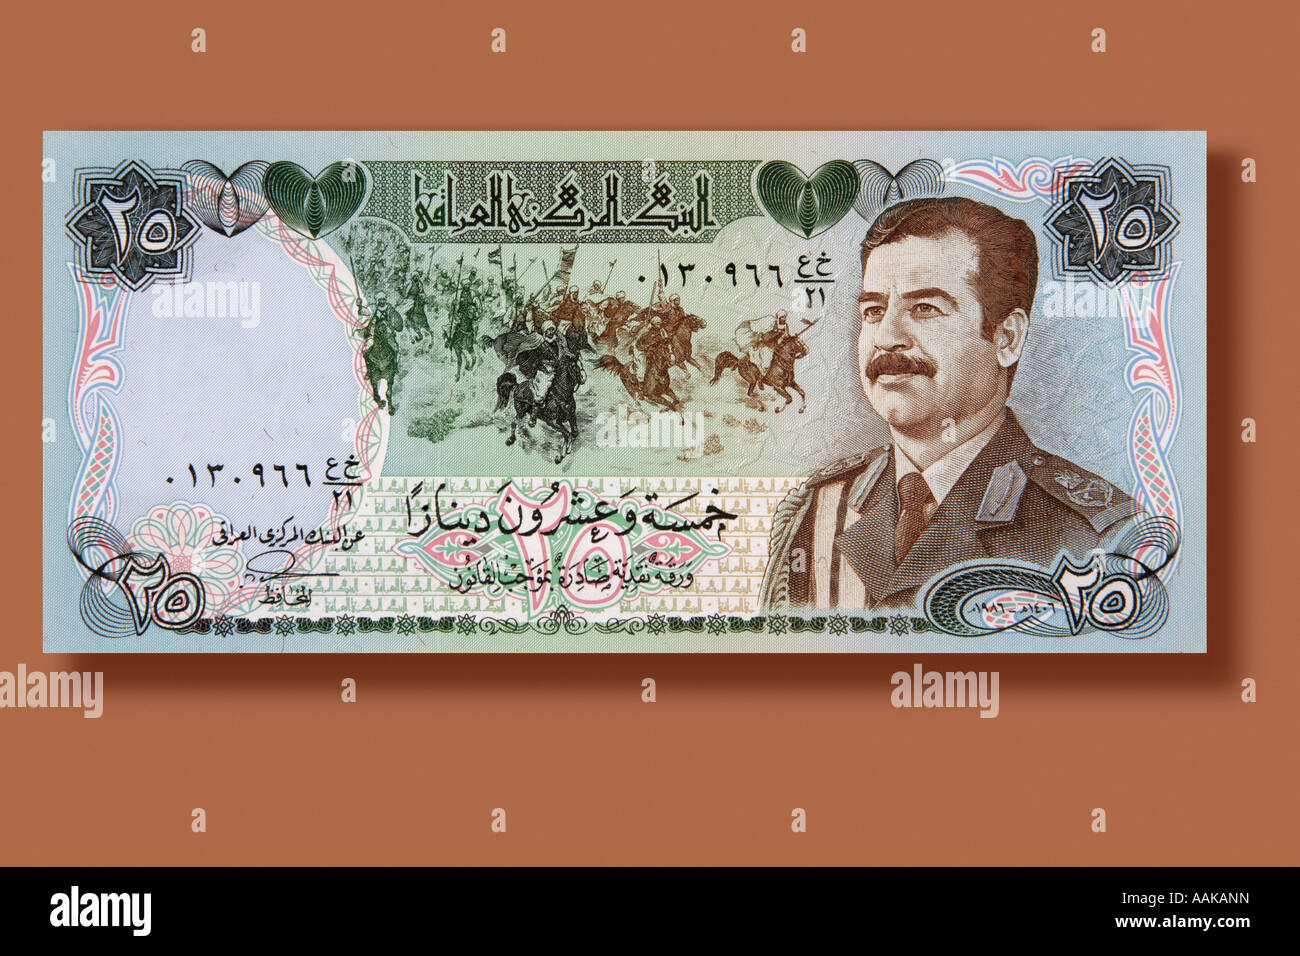 Carta moneta 25 Dinar nota dall'Iraq queste fatture sono del vecchio regime gestito dal dittatore Suddam Hussein Foto Stock